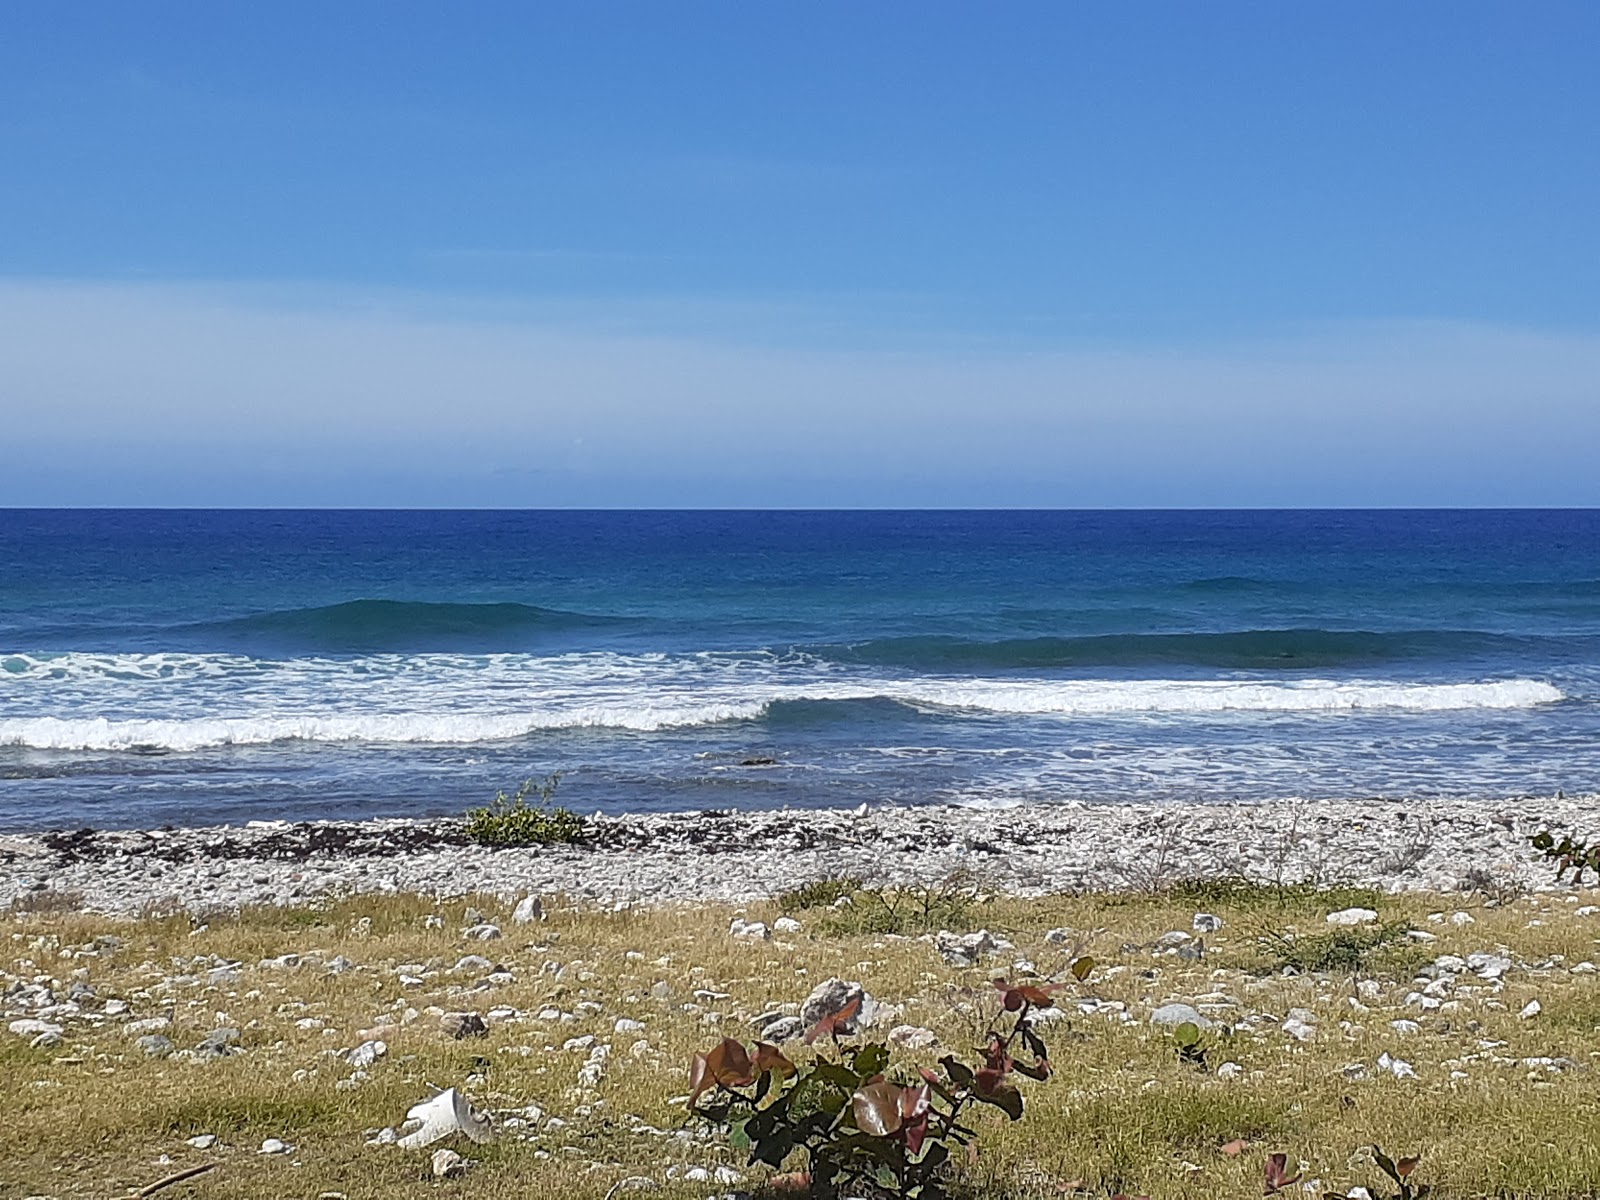 Playa Larga'in fotoğrafı taşlı kum yüzey ile